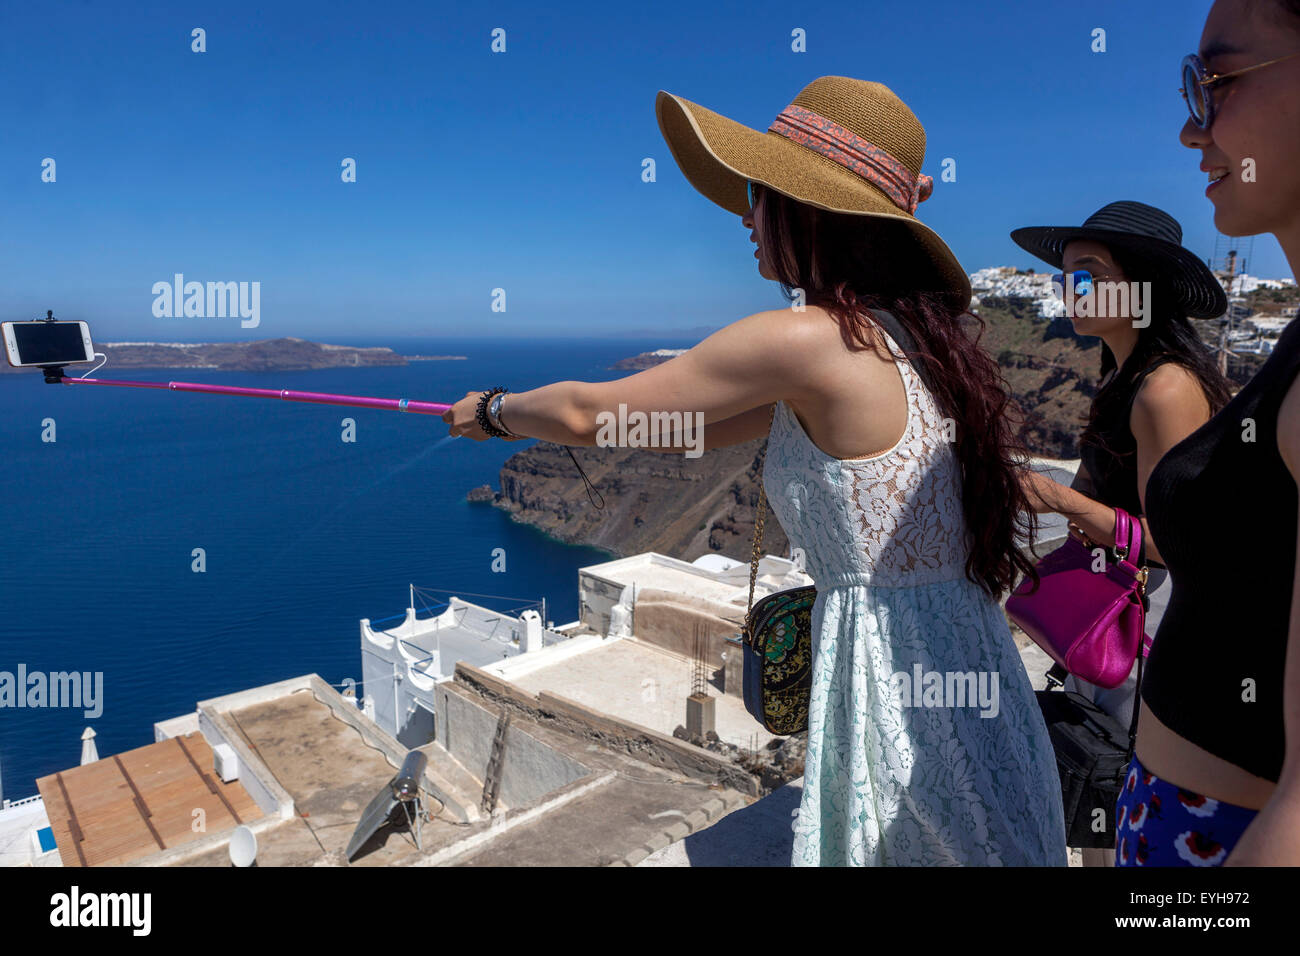 Persone, Asian turistica prendendo un selfie nel villaggio di Firostefani, sulla caldera e sul mare. Santorini, isole greche, Grecia Europa Foto Stock